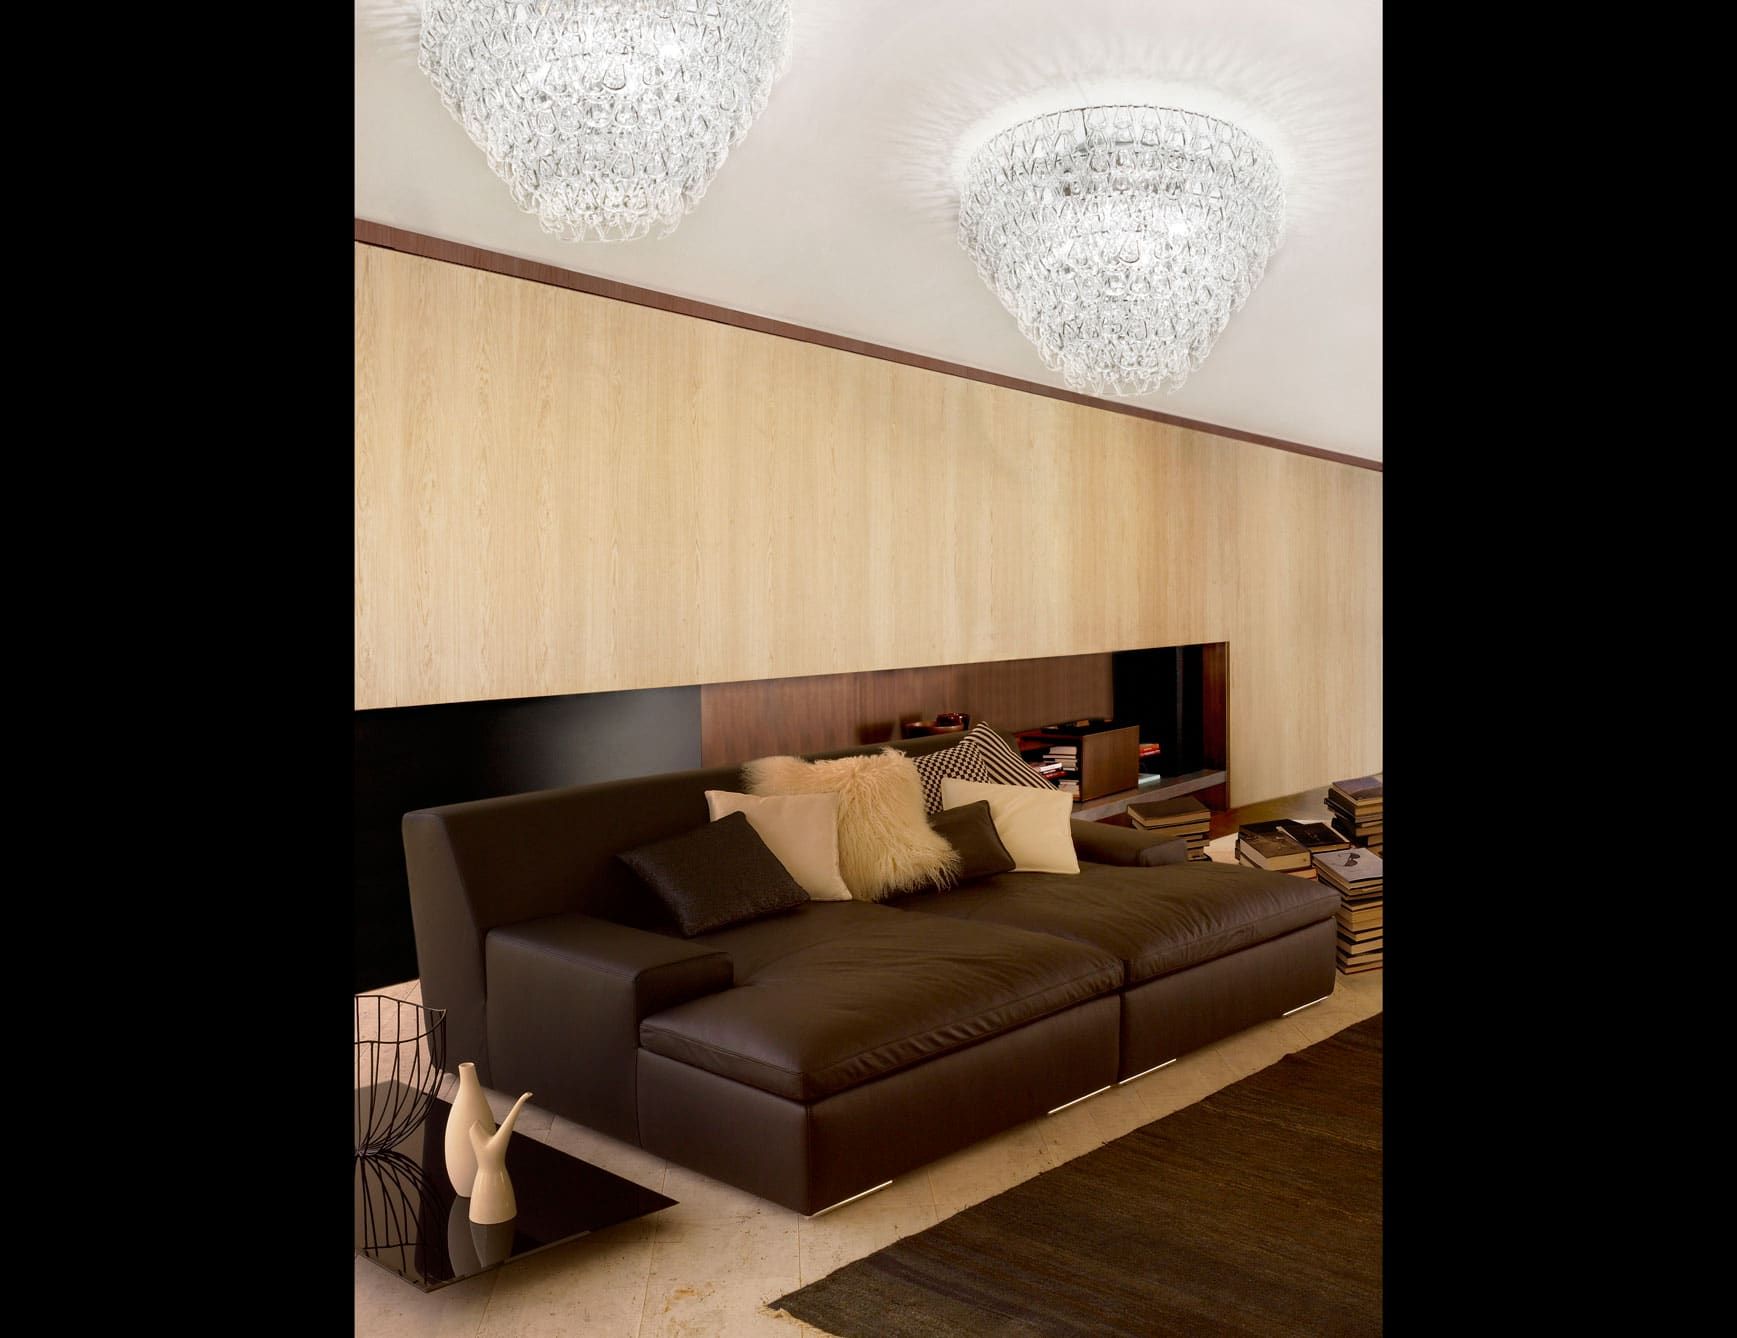 Minigiogali modern luxury chandelier with clear crystal